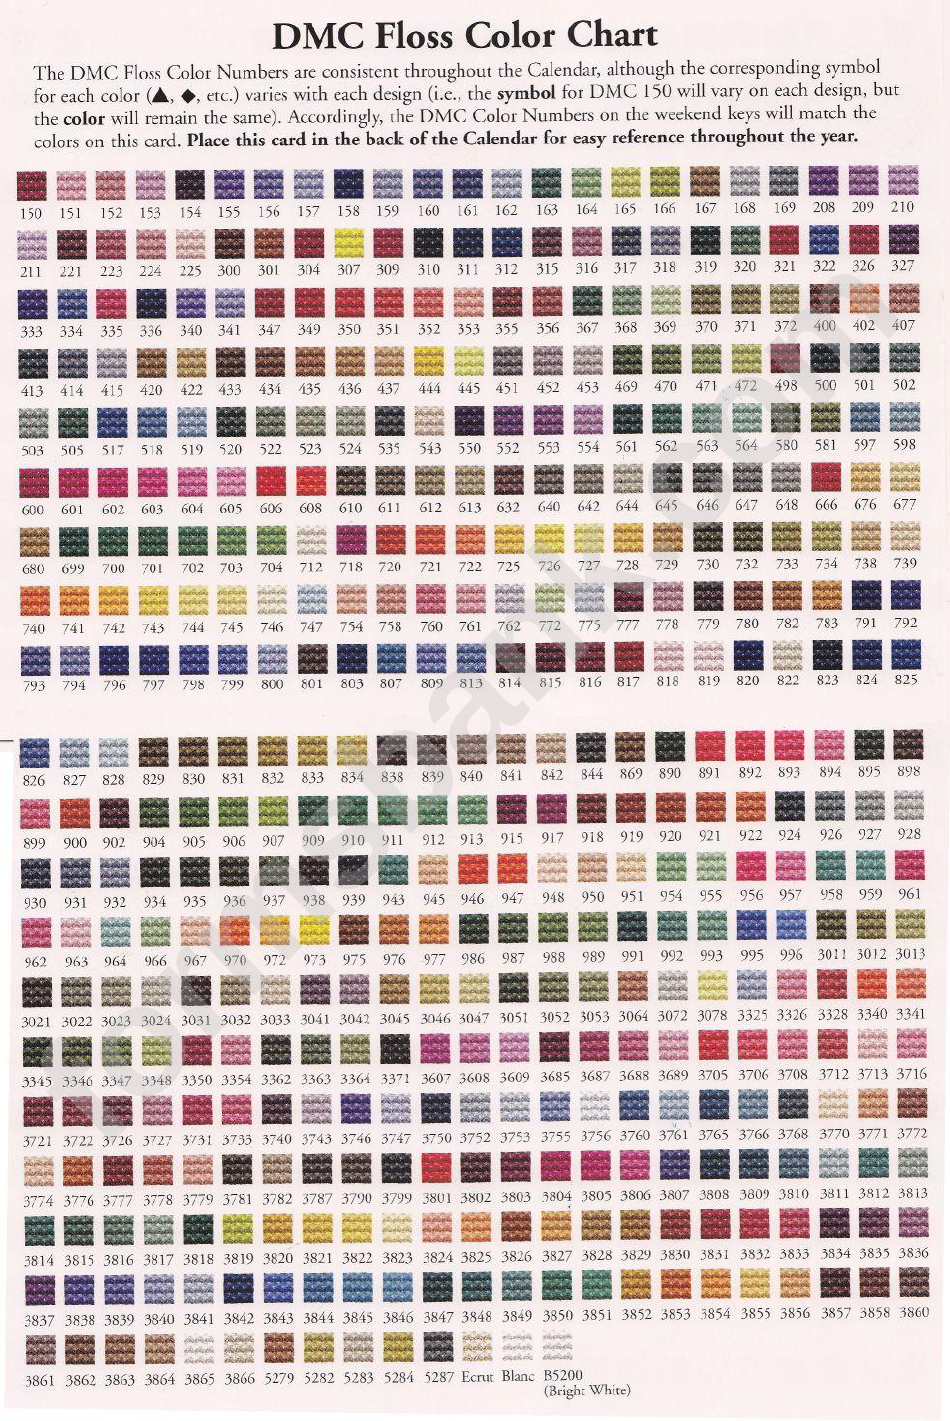 Dmc Floss Color Chart printable pdf download